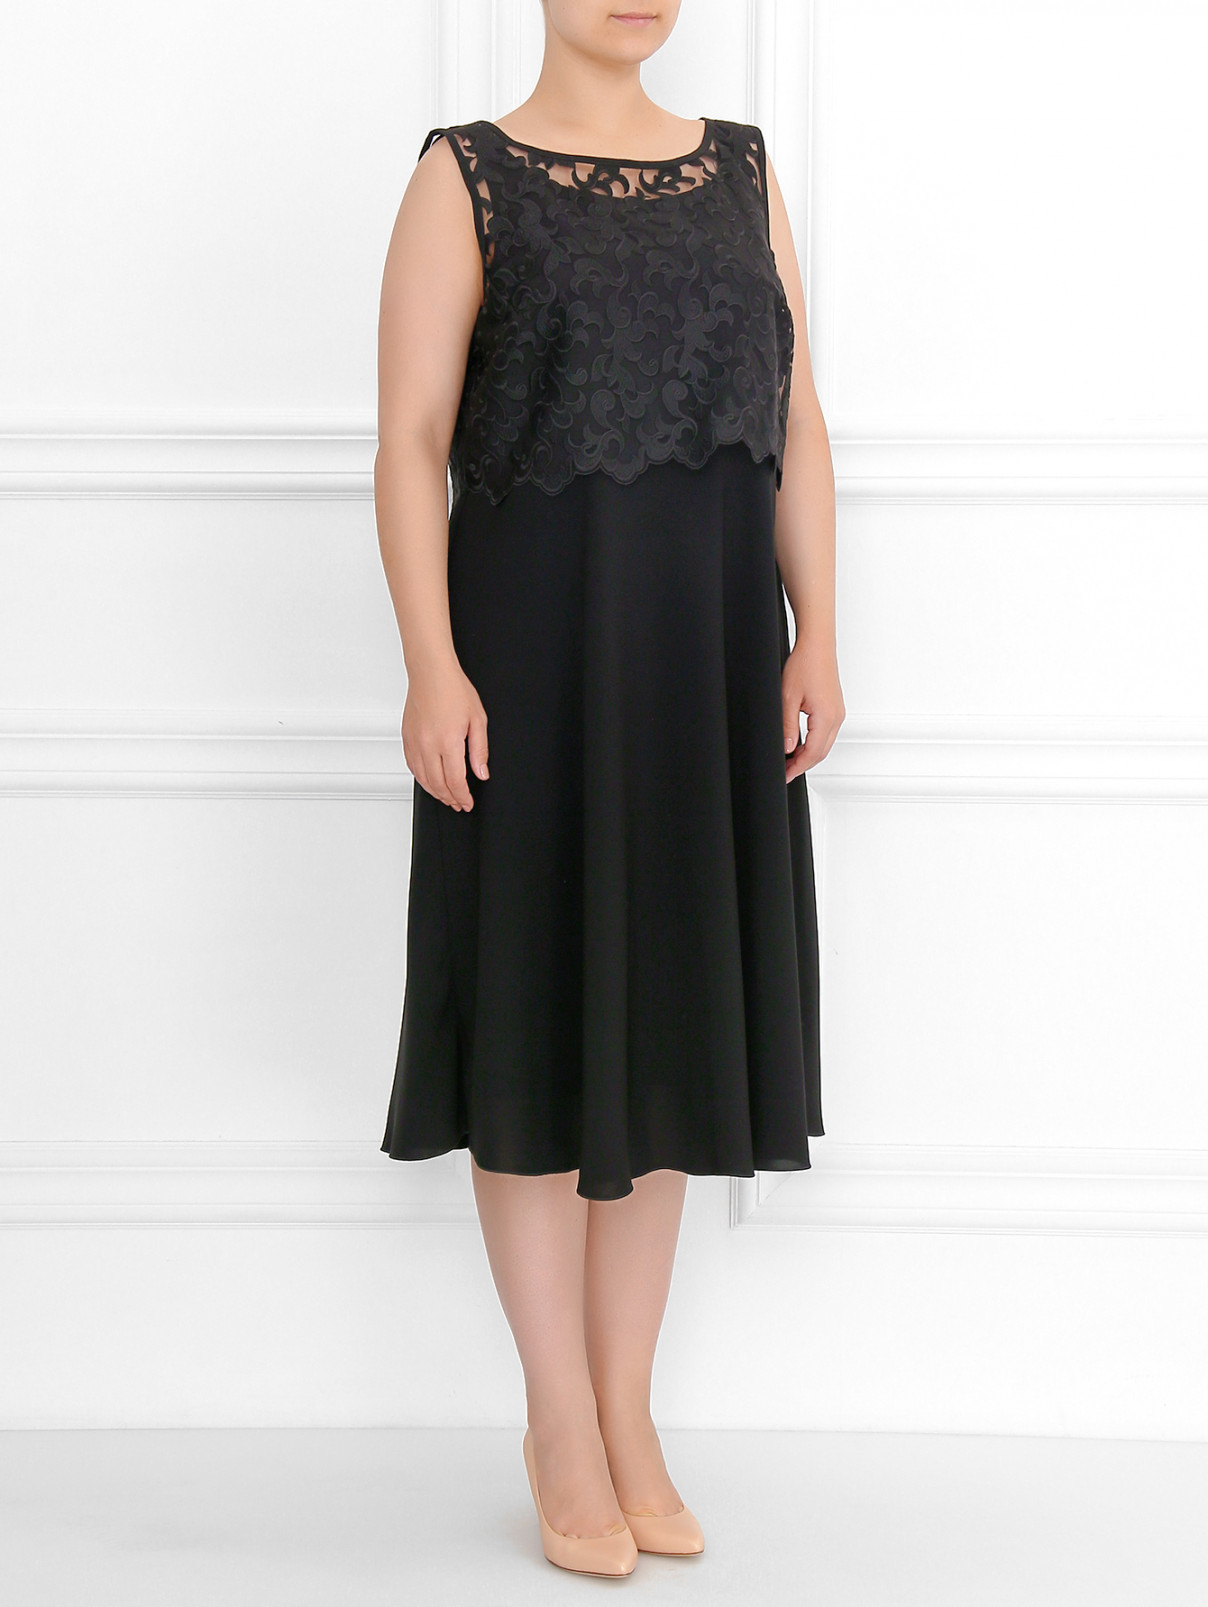 Платье без рукавов с отделкой из кружева Marina Rinaldi  –  Модель Общий вид  – Цвет:  Черный